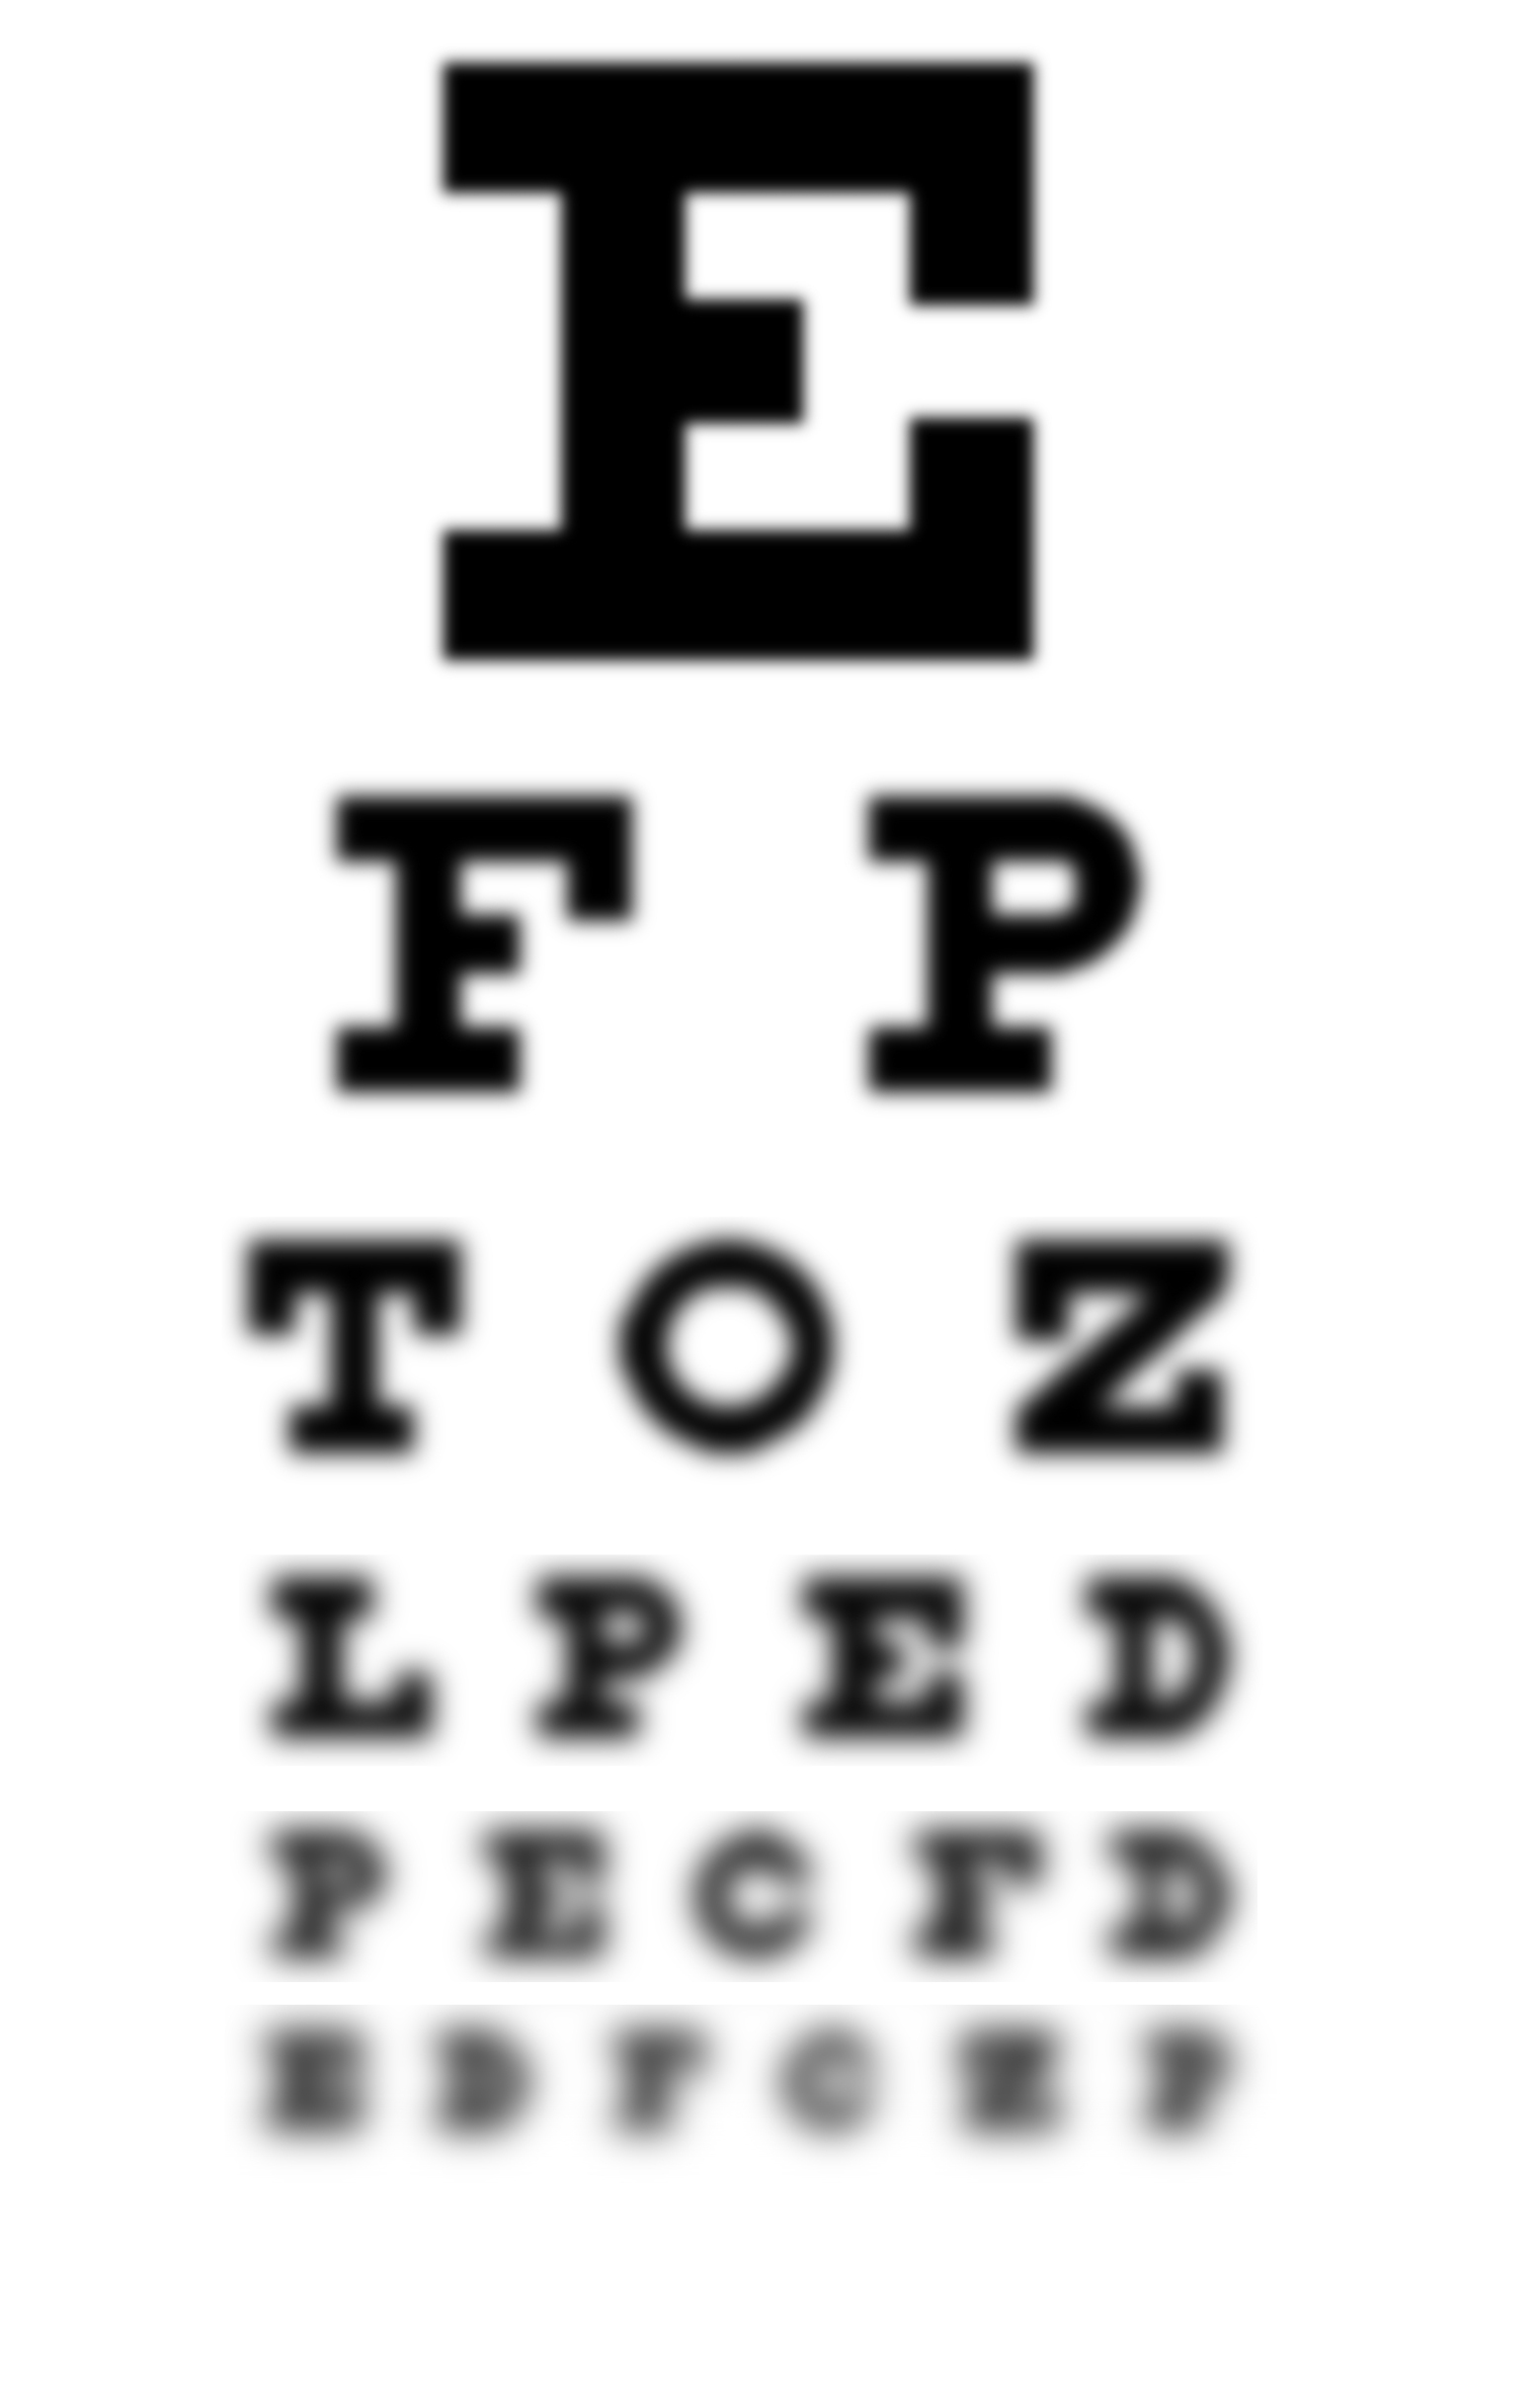 Controlul oftalmologic pentru ochelari